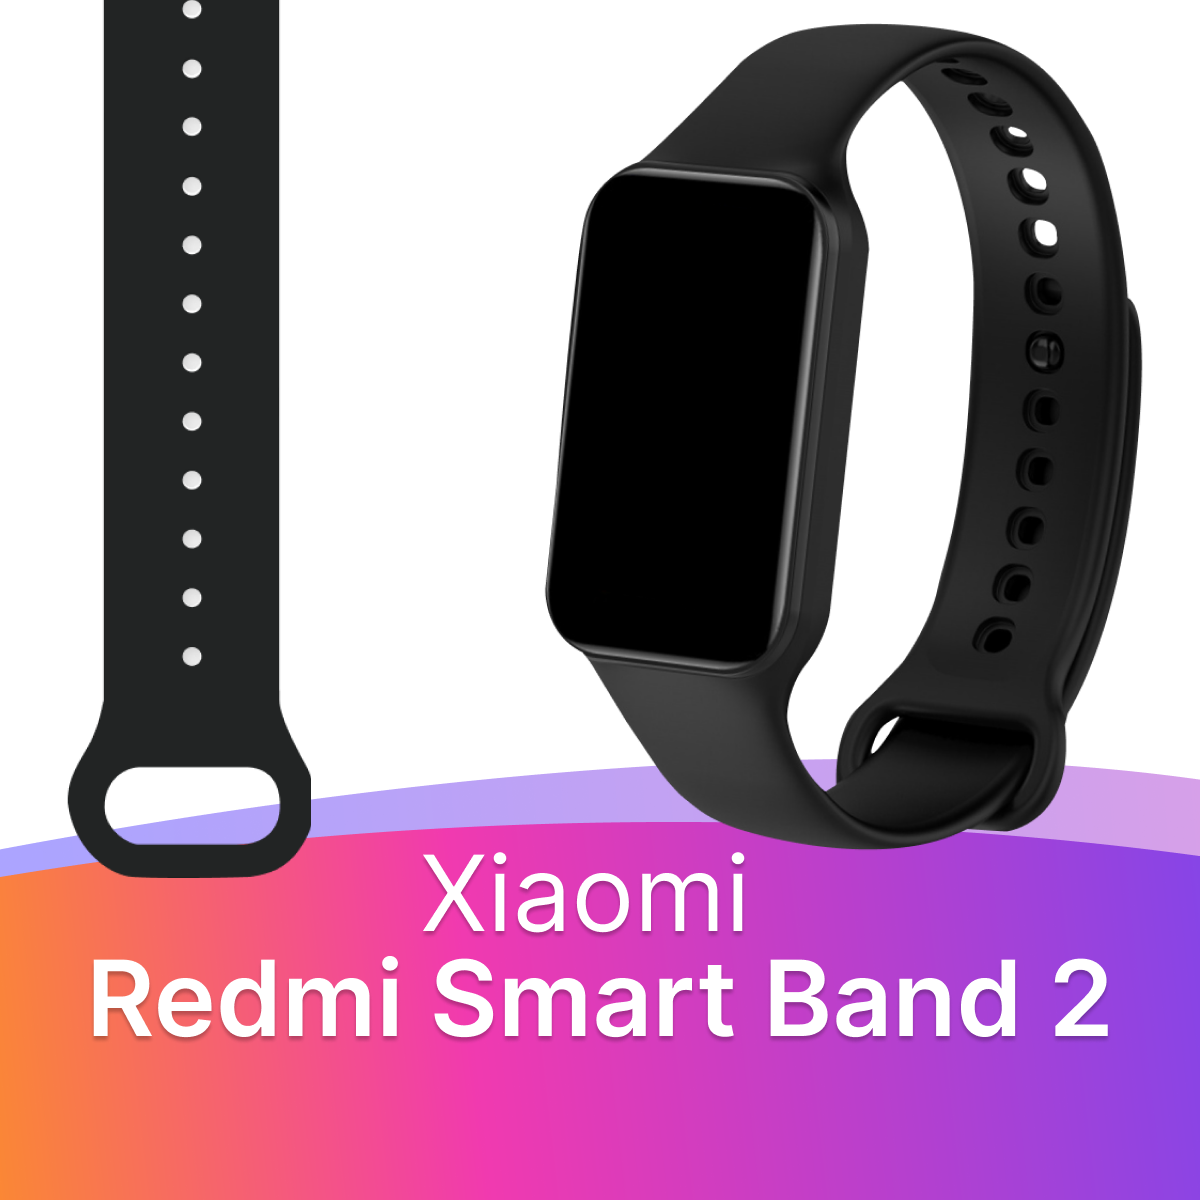 Силиконовый ремешок для фитнес браслета Xiaomi Redmi Smart Band 2/ Спортивный сменный ремешок для смарт часов Сяоми Редми Смарт Бэнд 2 (Белый)